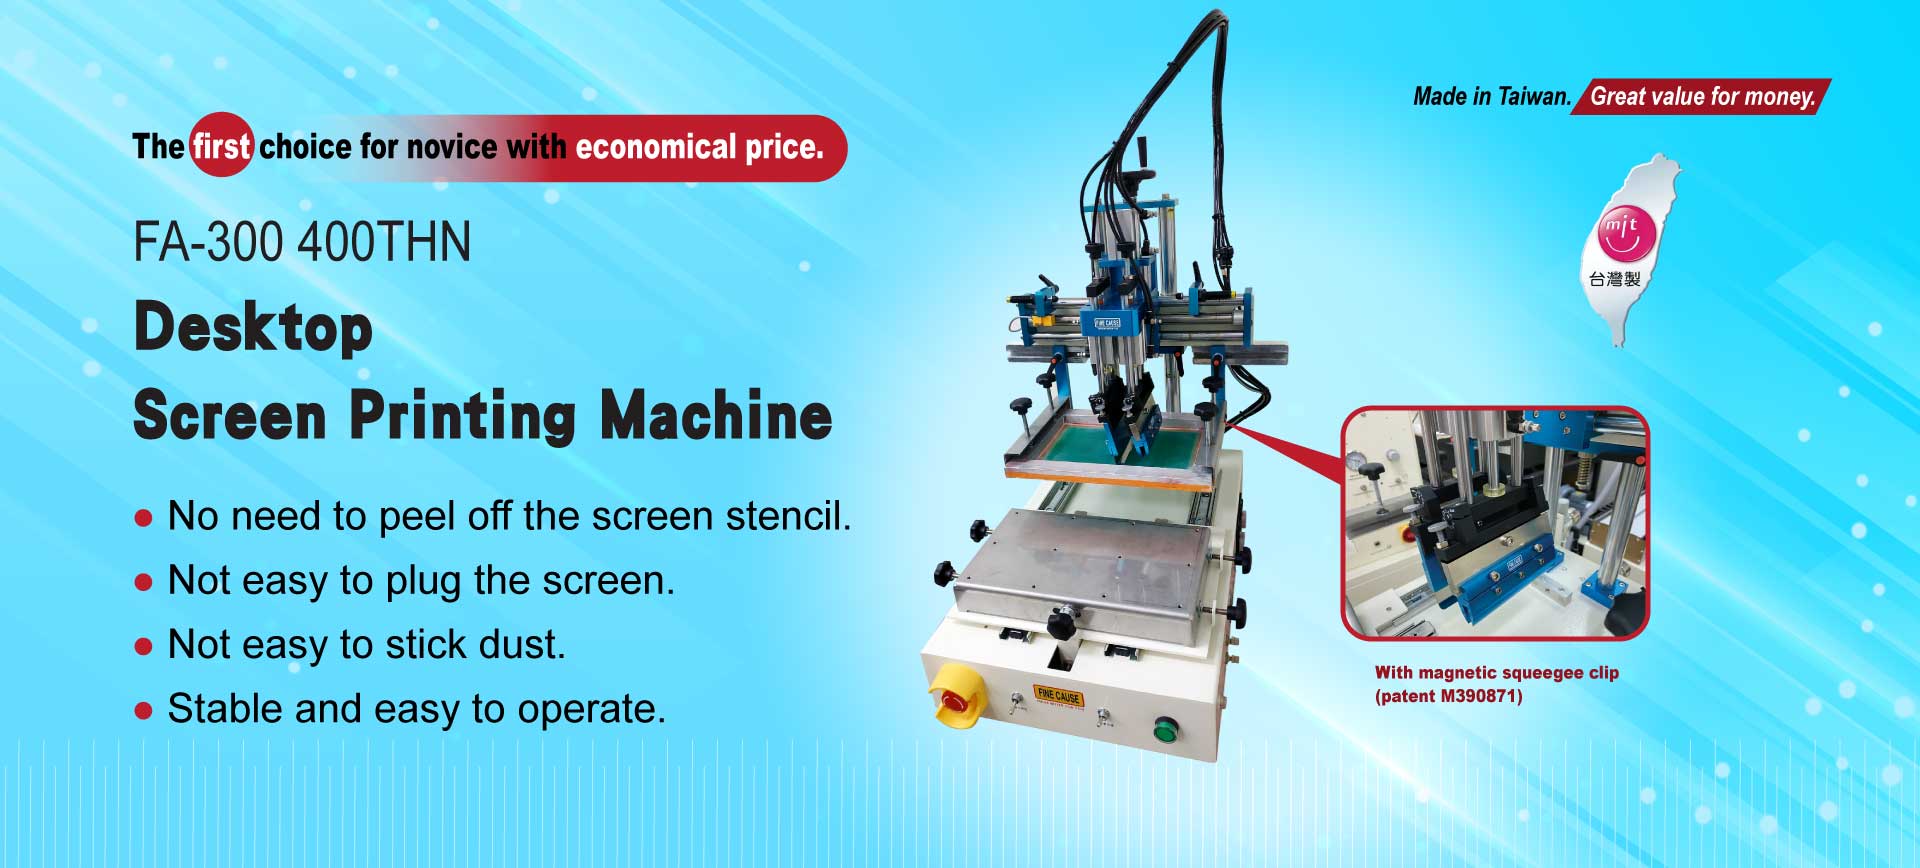 Desktop screen printing machine-FA-300 400THN